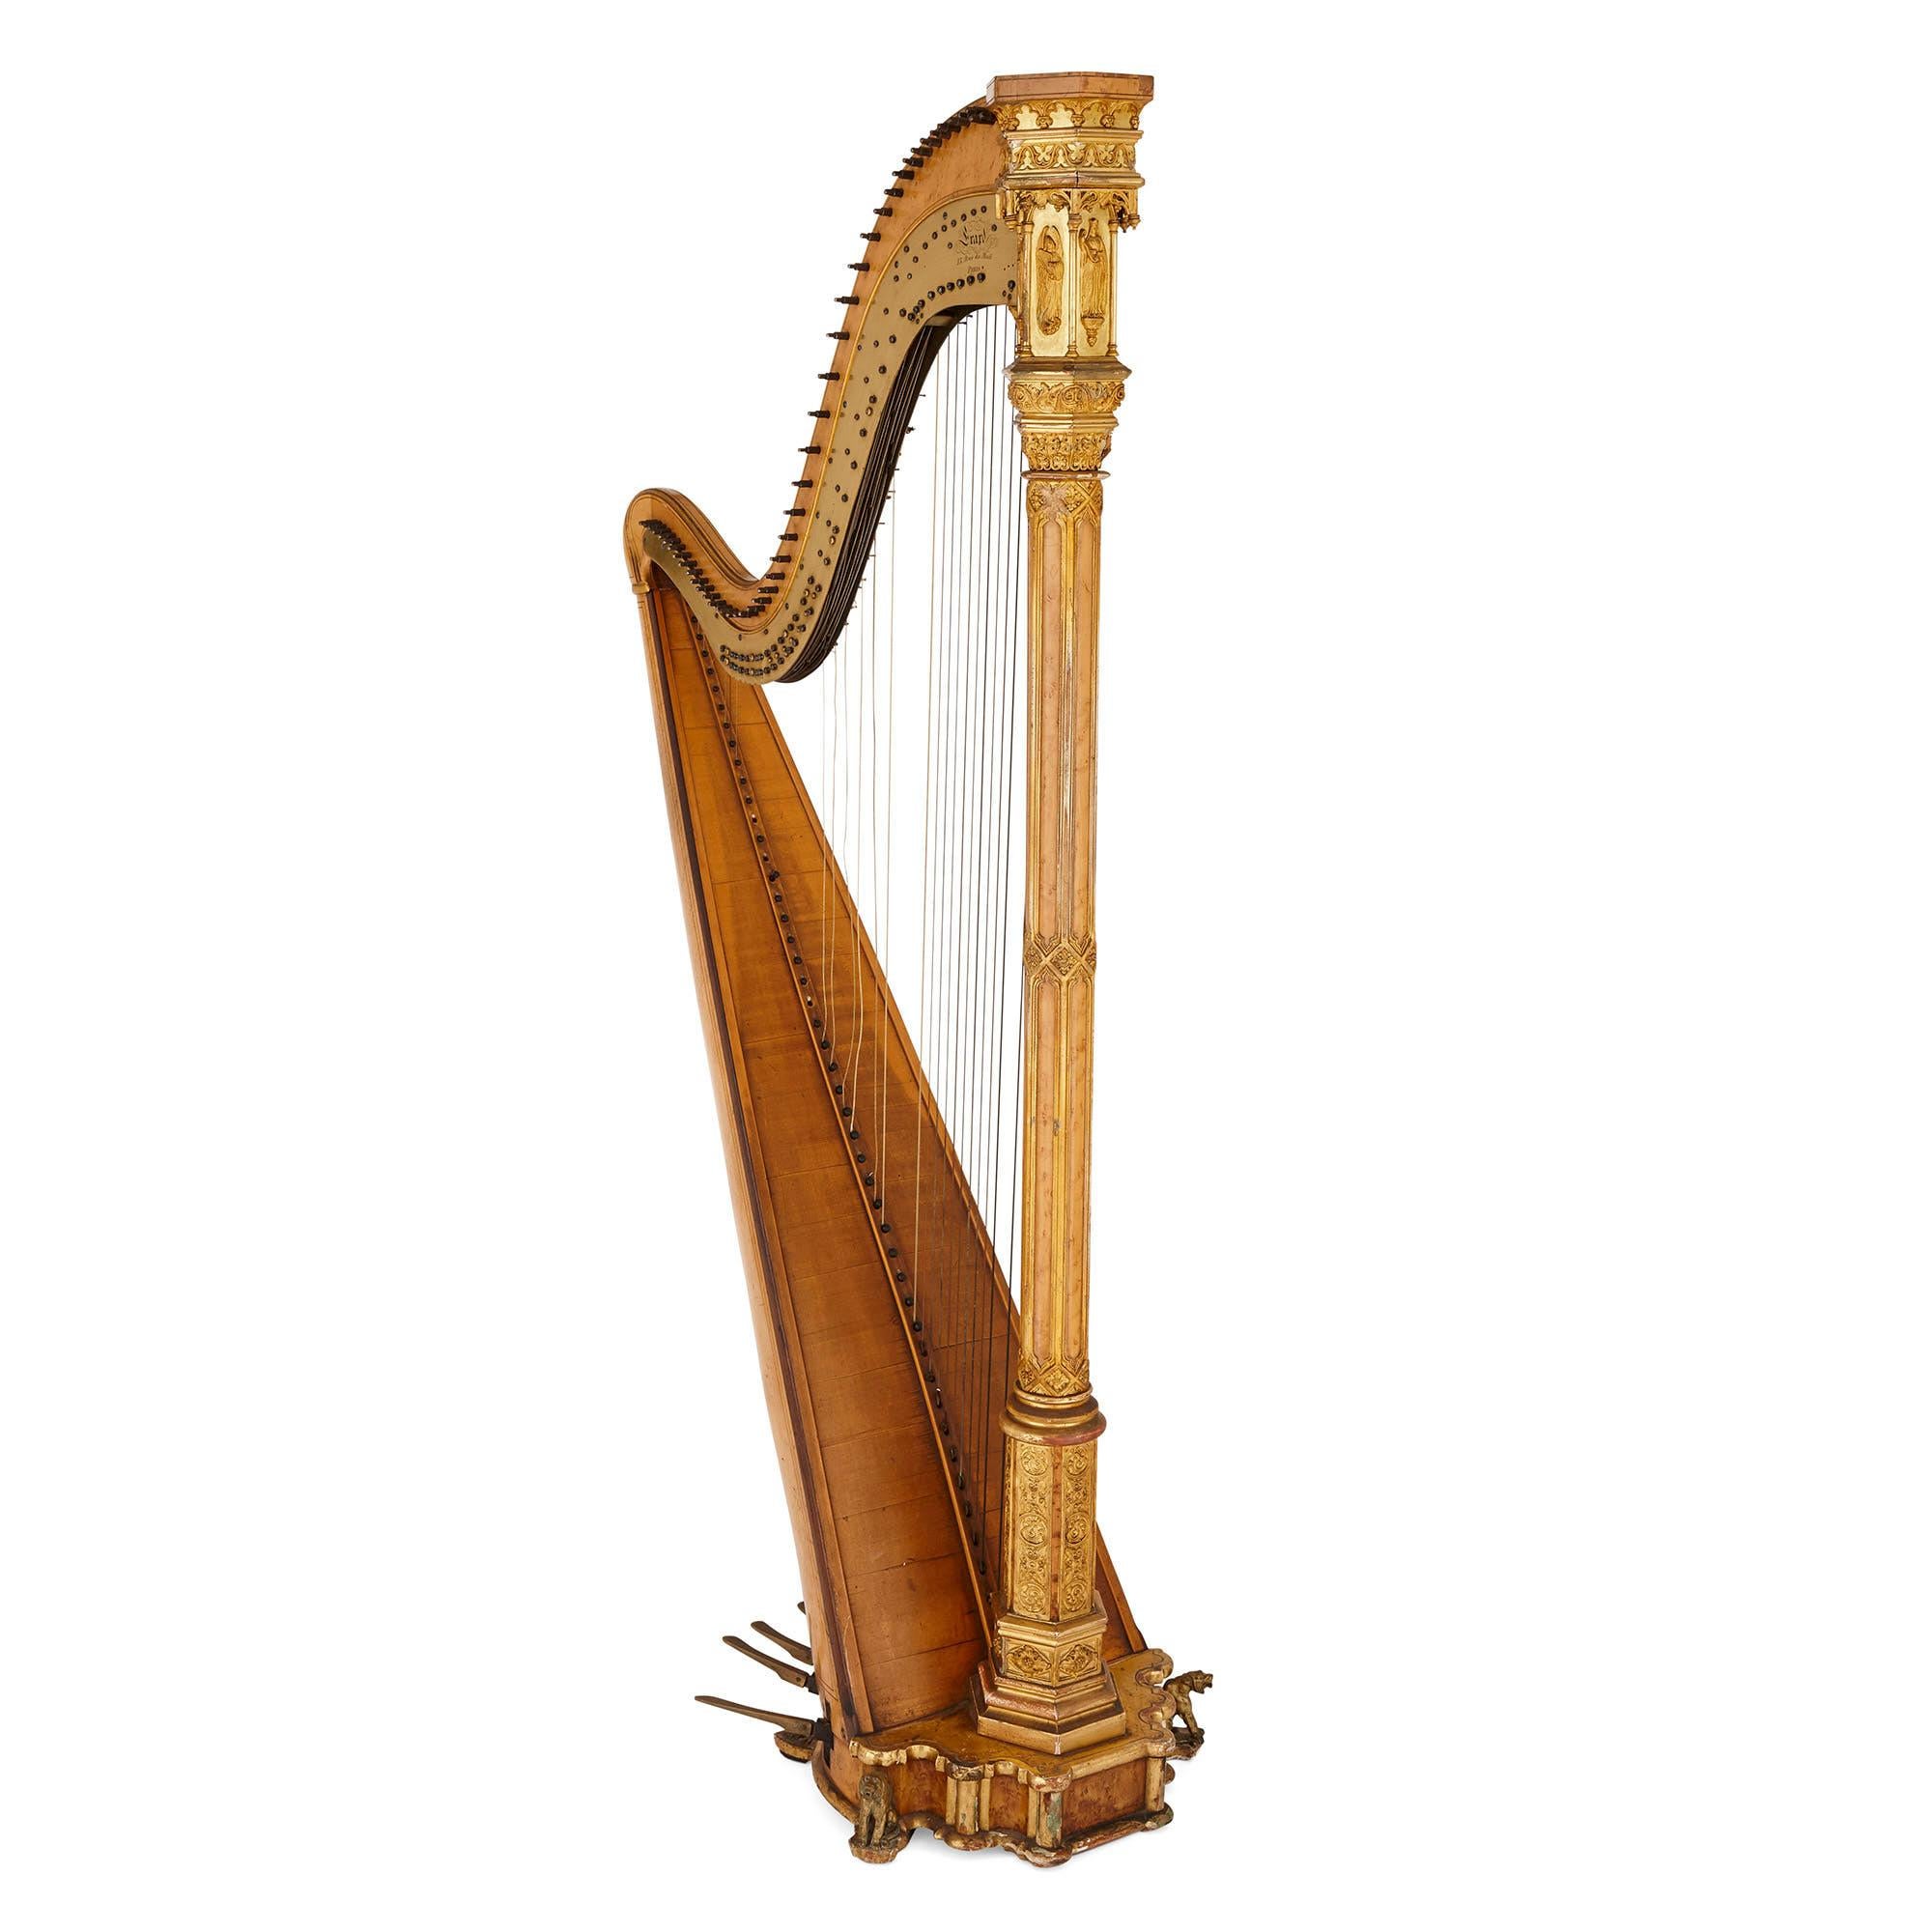 Harpe ancienne néo-gothique d'Erard
Français, vers 1840
Mesures : Hauteur 178cm, largeur 54cm, profondeur 91cm

Forme typique du célèbre facteur d'instruments Érard. Avec des reflets dorés et reposant sur quatre pieds courts, les deux premiers